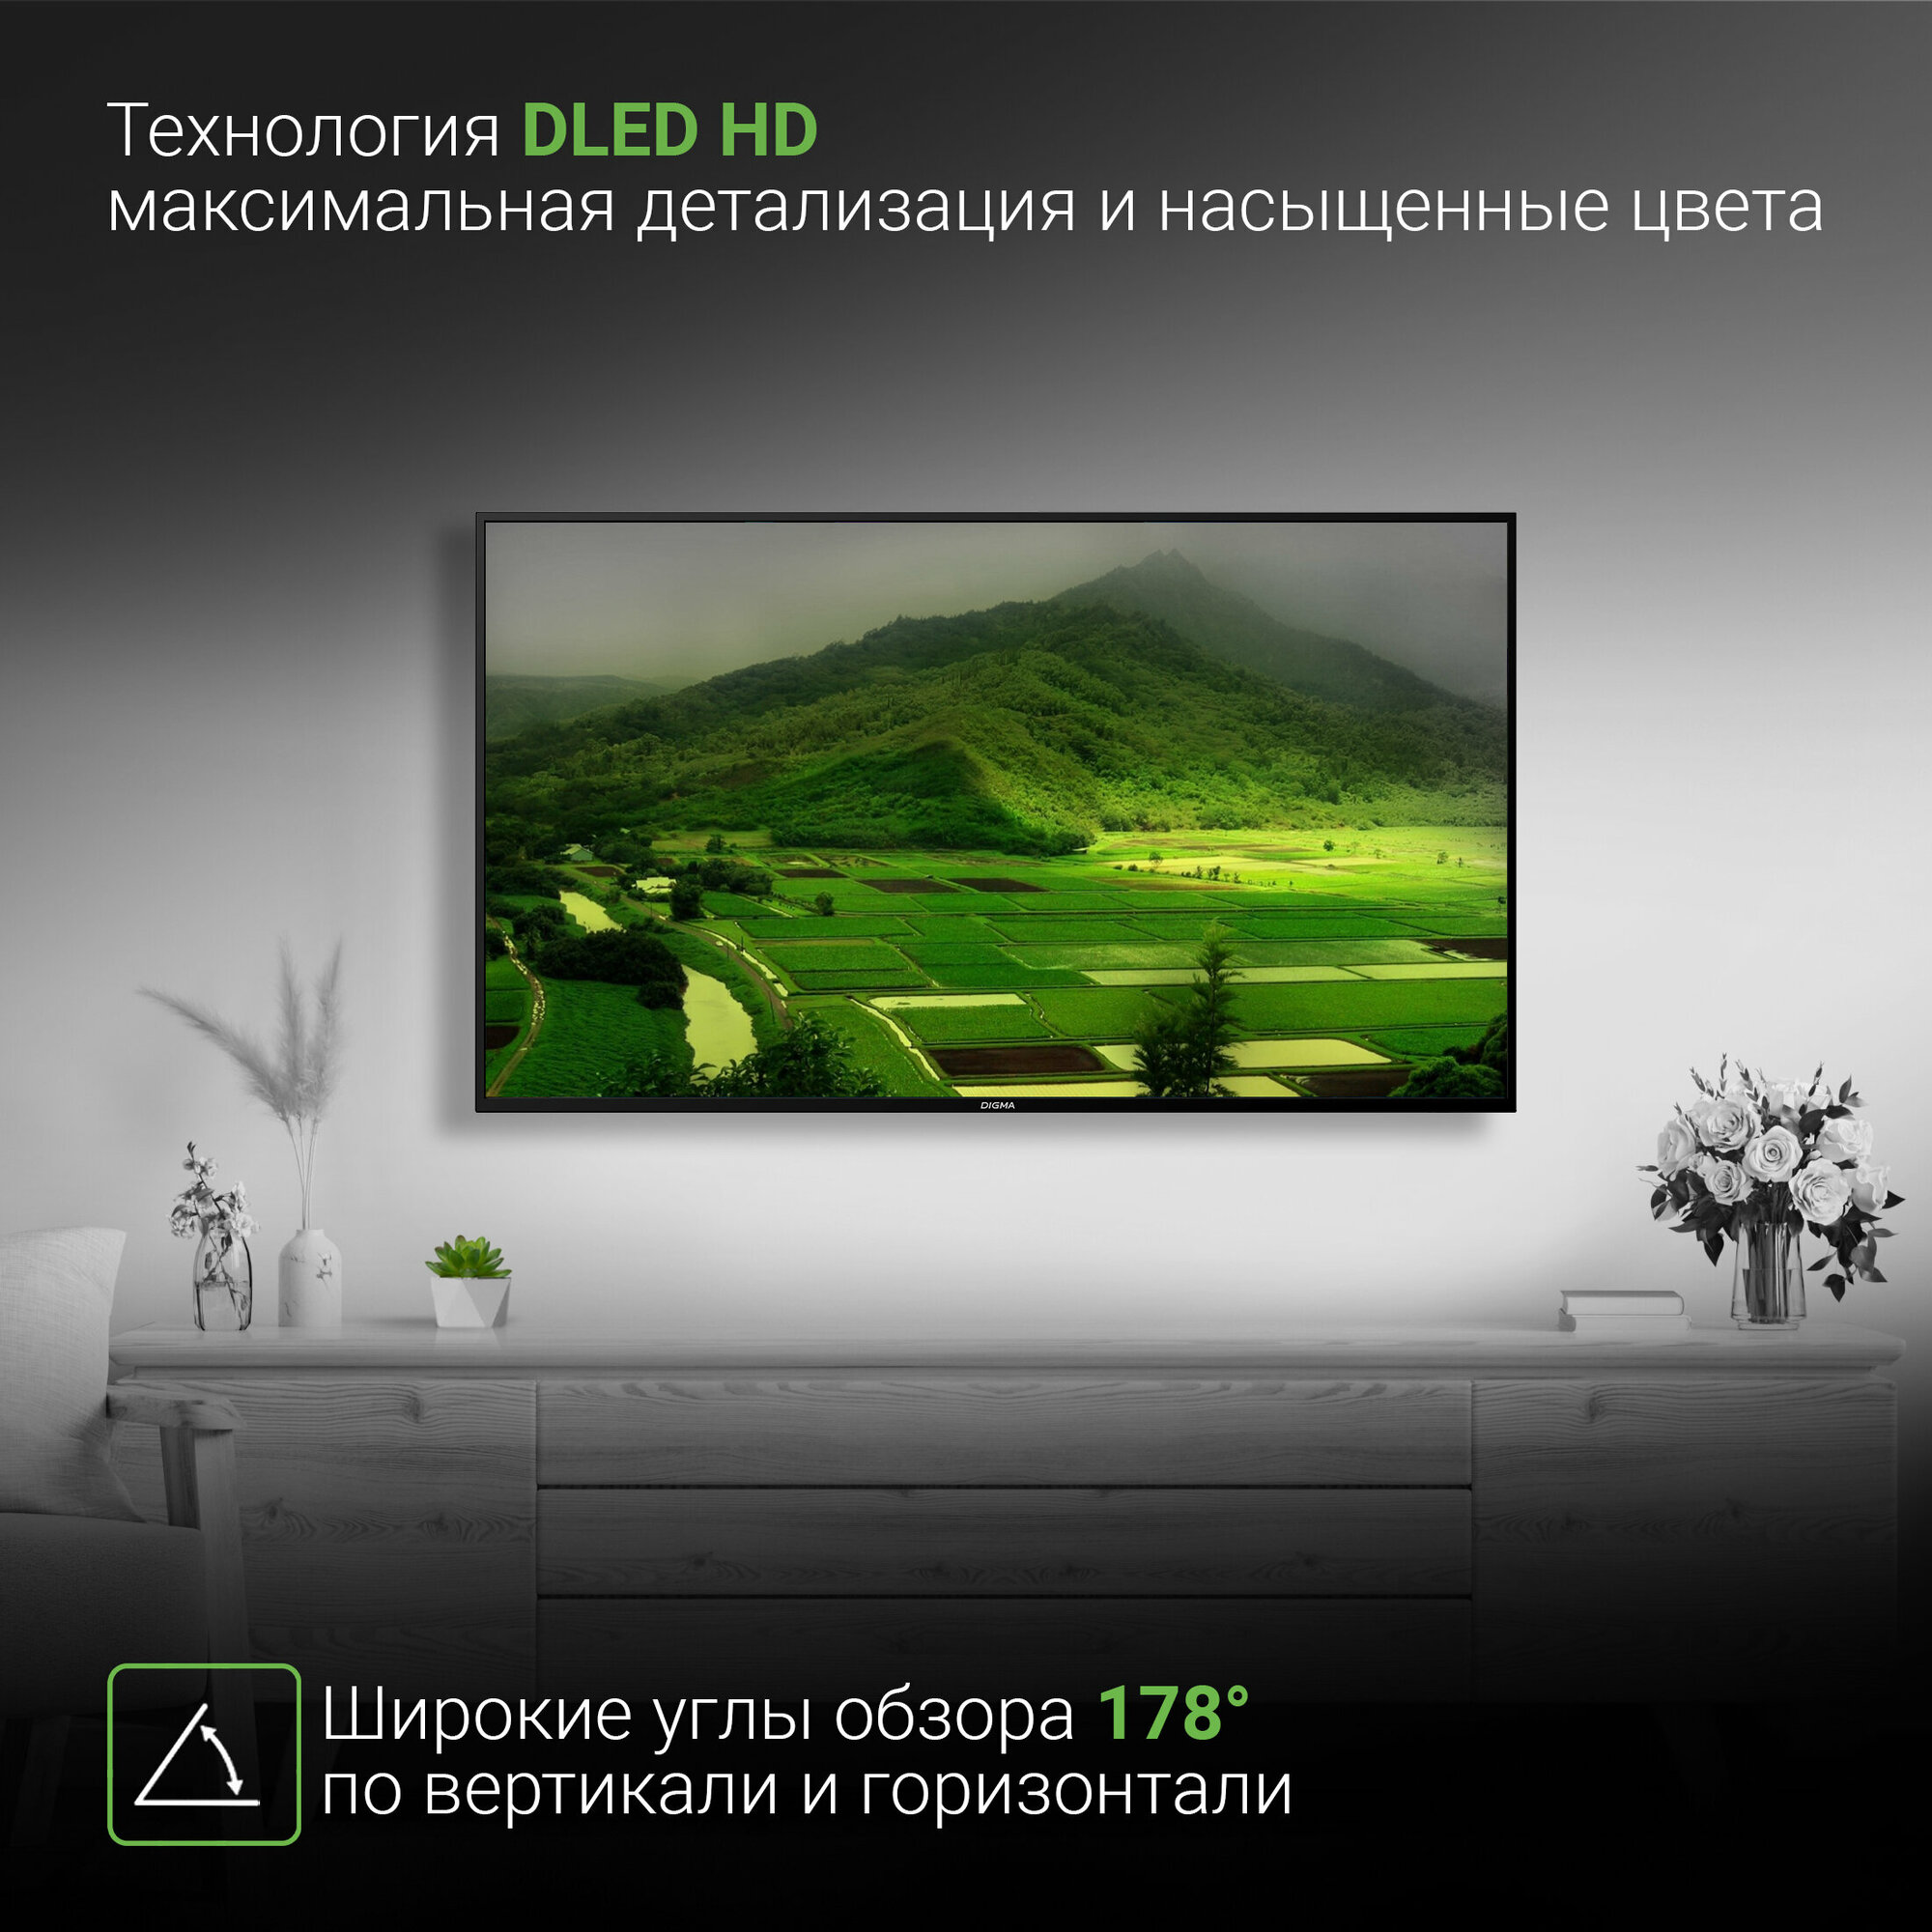 Телевизор Digma Яндекс.ТВ DM-LED50UBB31, 50", LED, 4K Ultra HD, Яндекс.ТВ, черный - фото №7